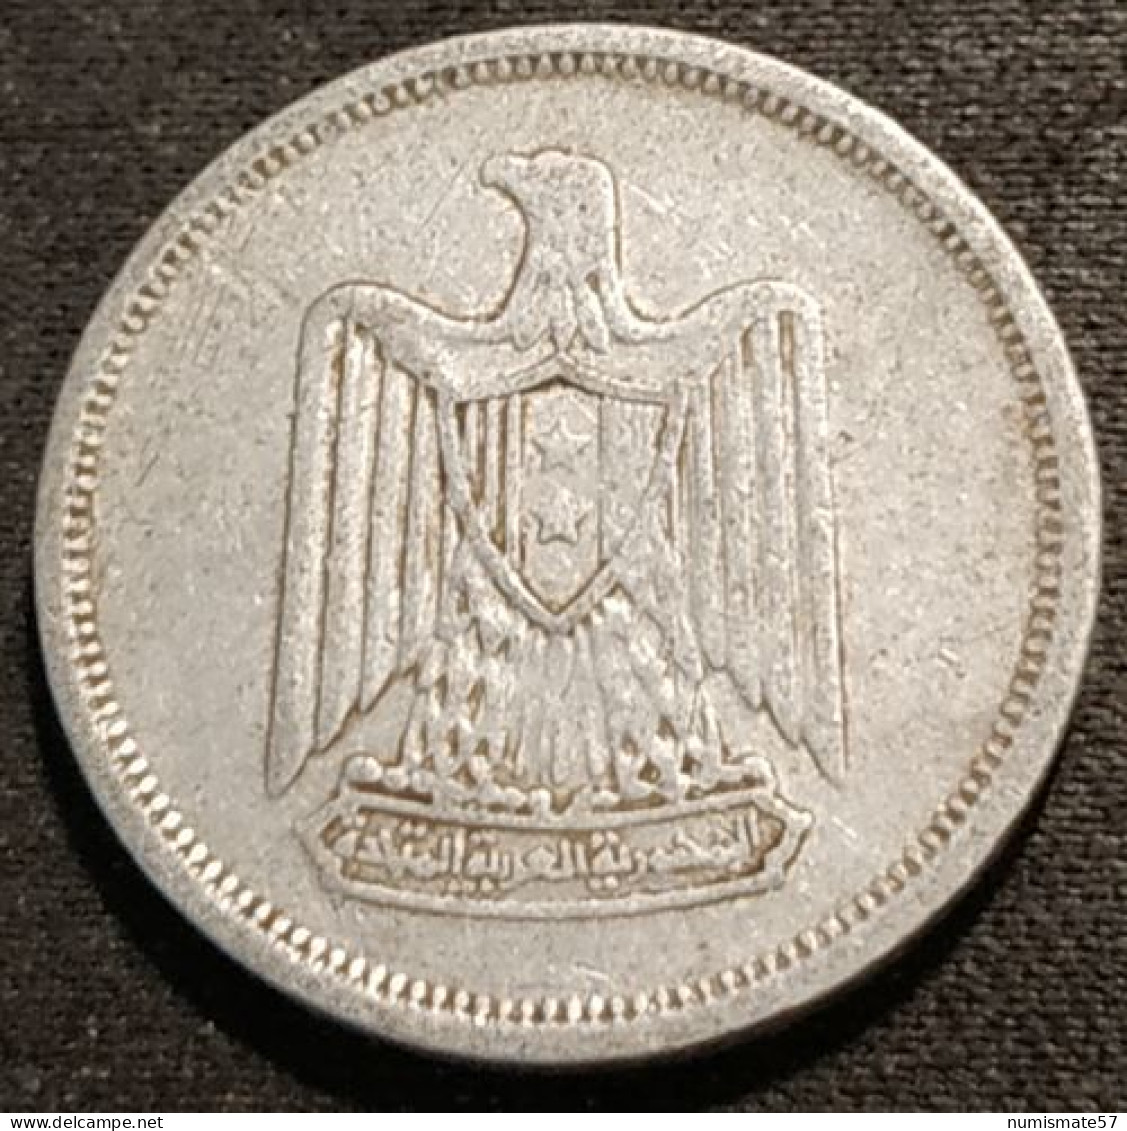 EGYPTE - EGYPT - 5 MILLIEMES 1967 ( 1386 ) - KM 410 - Egypt